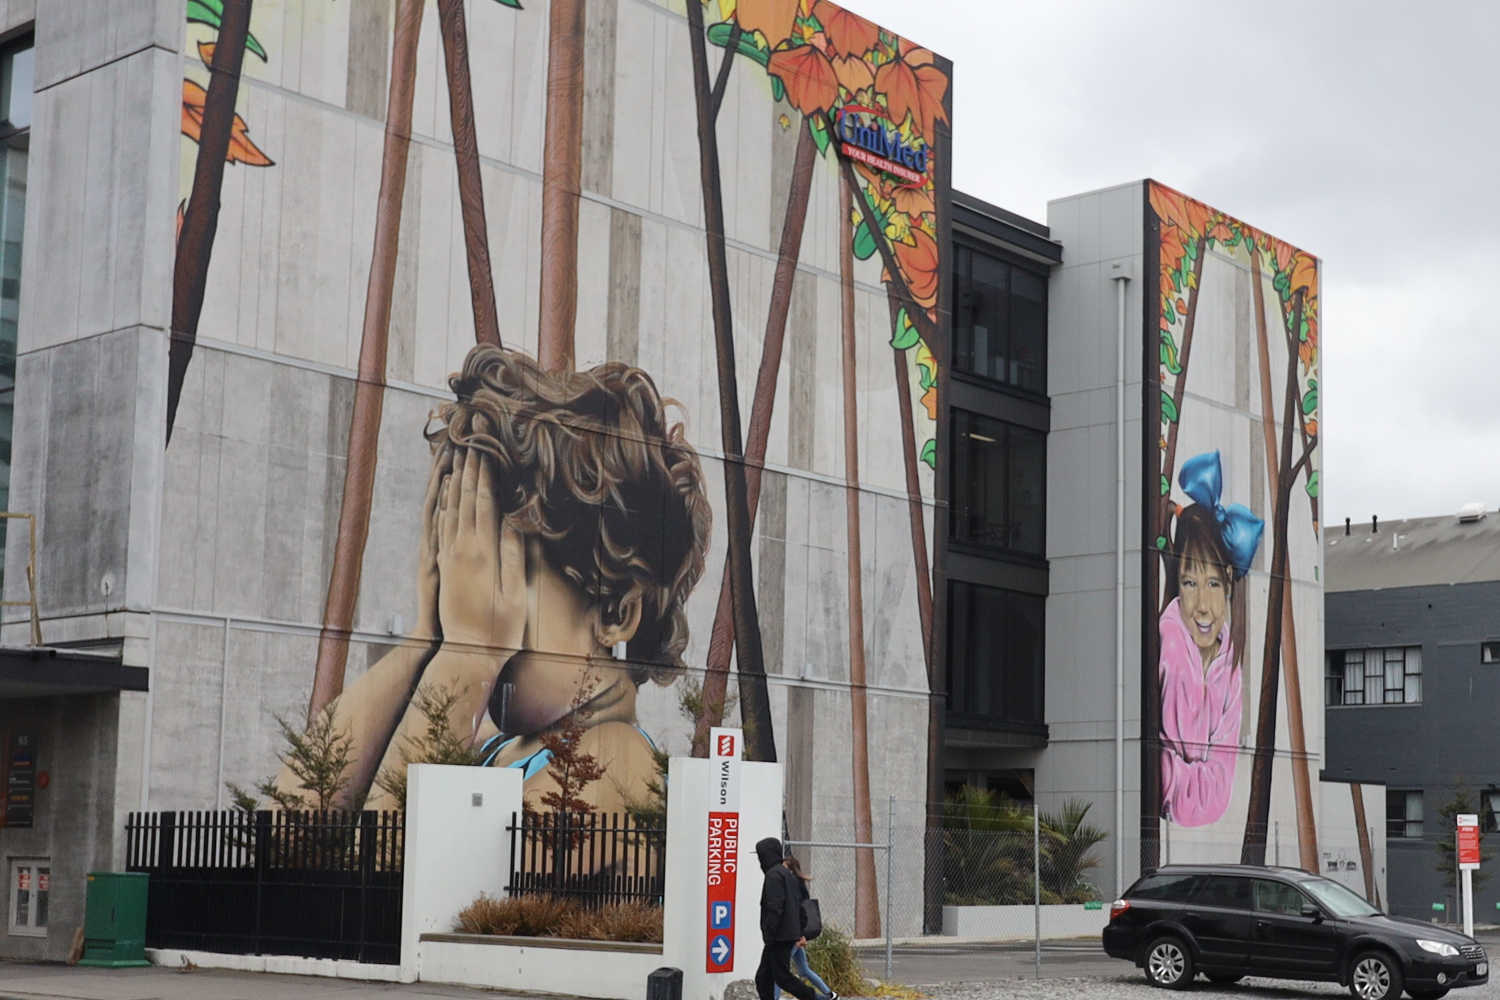 Christchurch street art, New Zealand